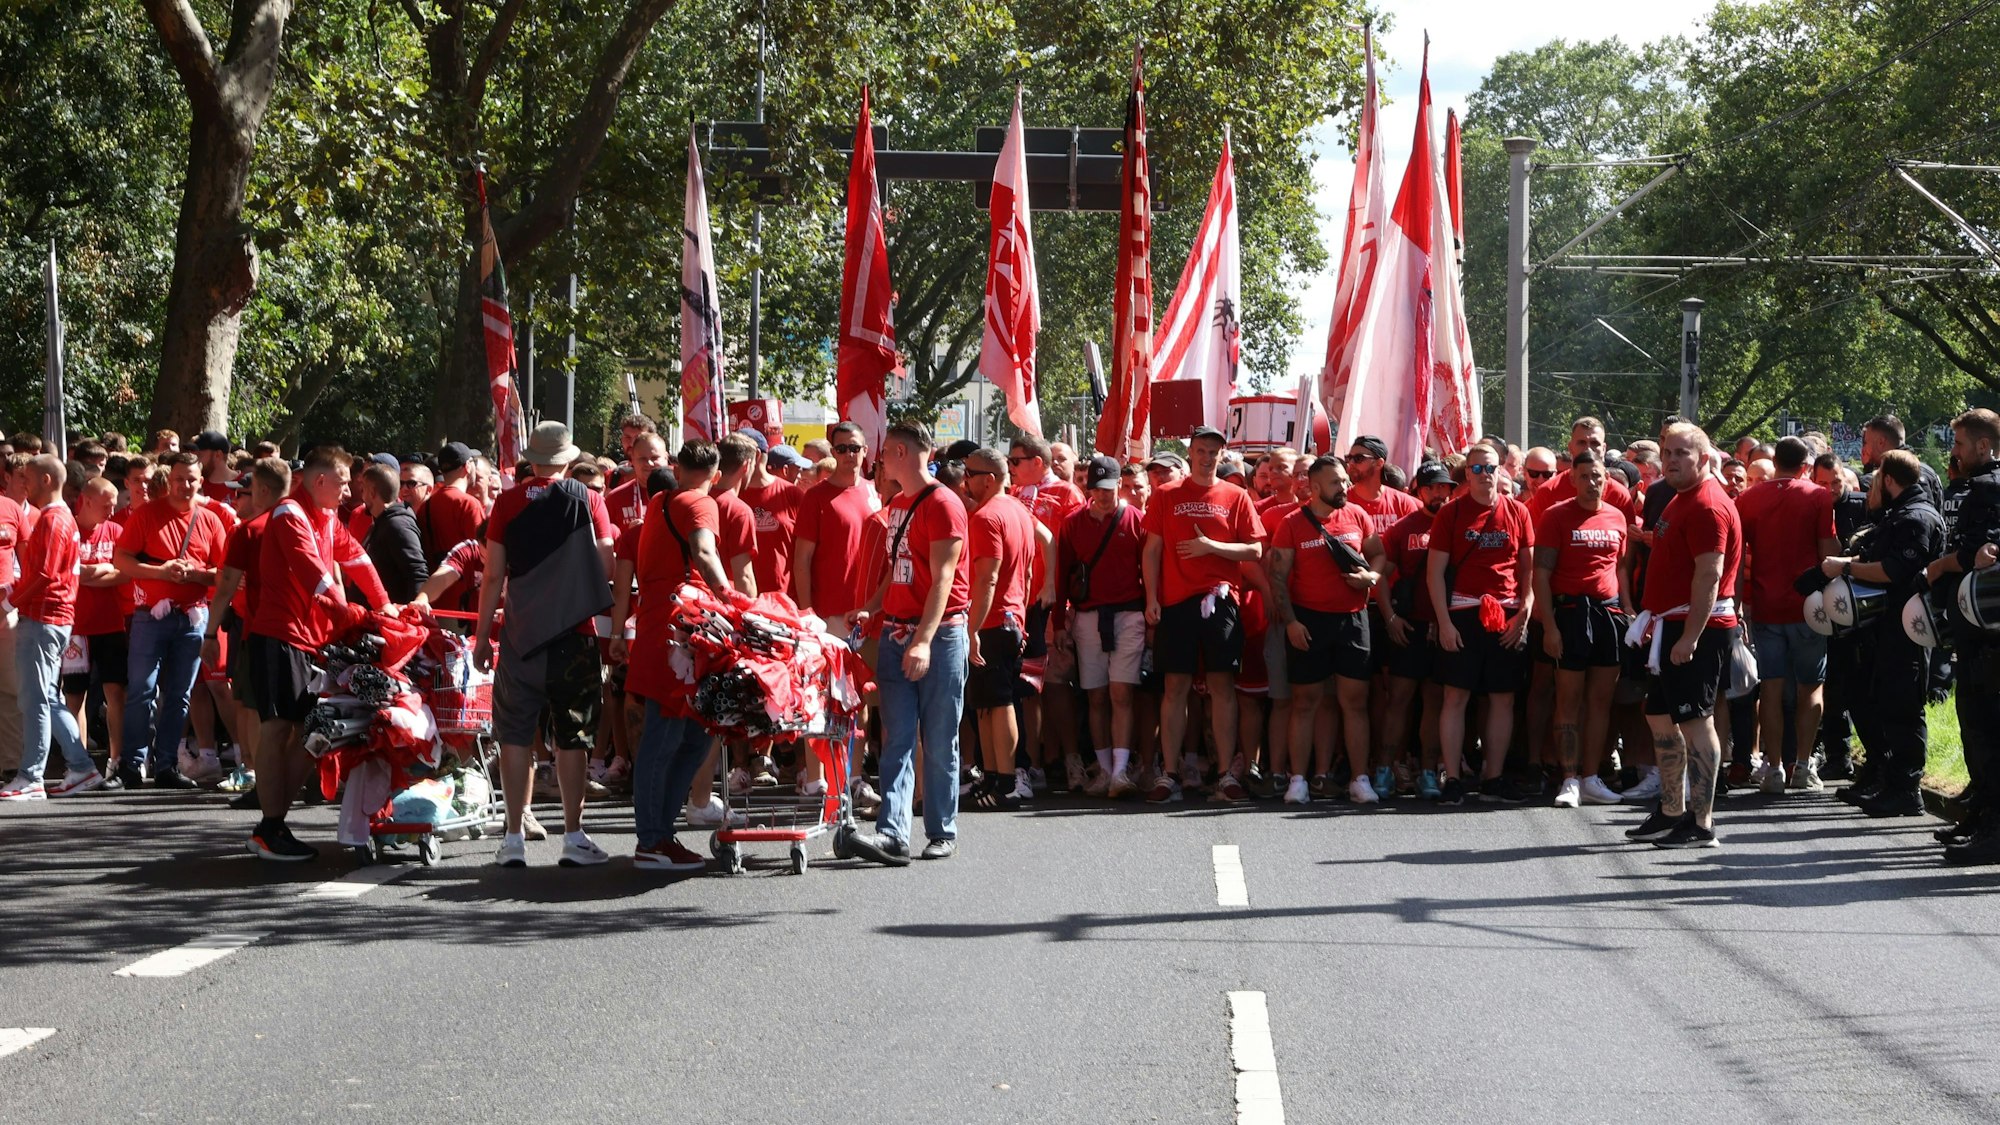 Hunderte FC-Fans auf der Aachener Straße, auf dem Weg zum Stadion.

